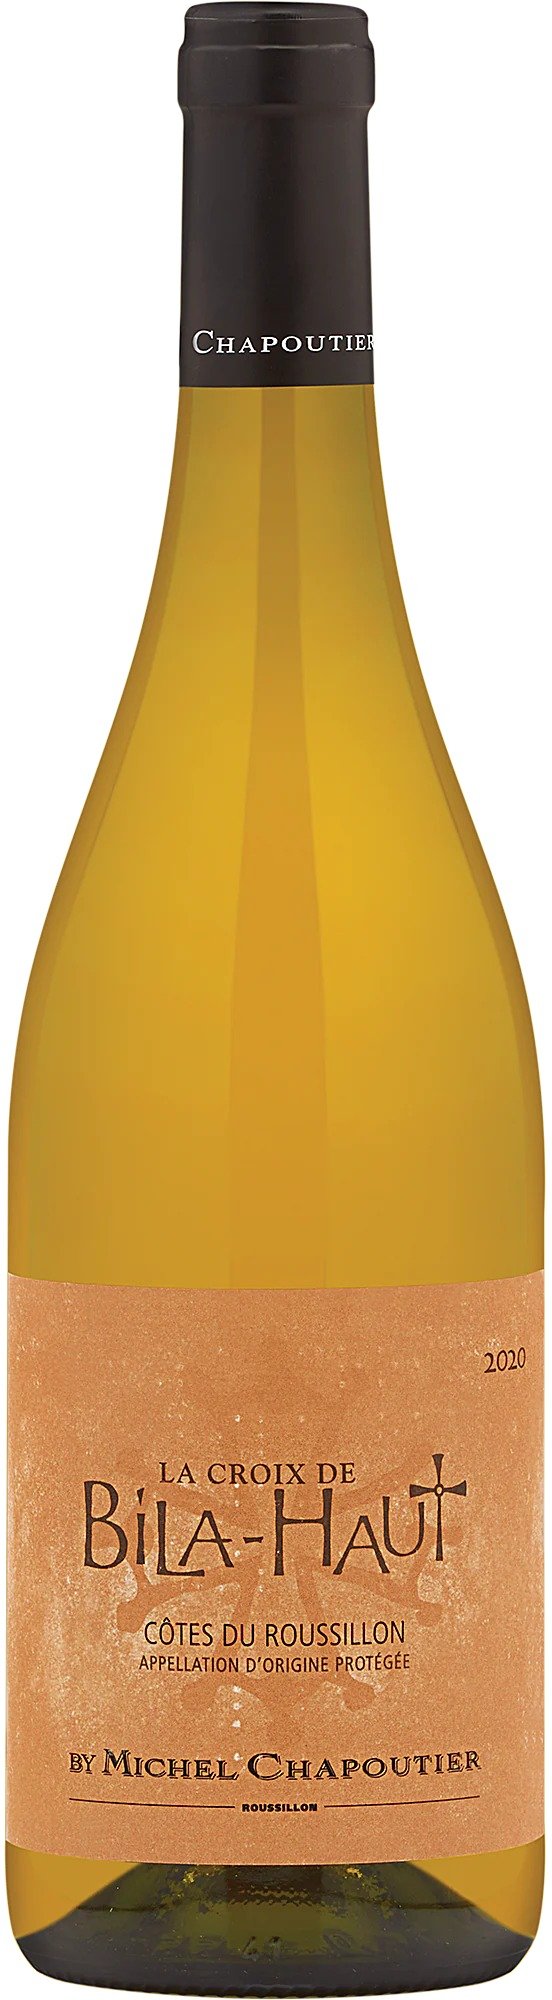 2021 La Croix de Bila-Haut 白葡萄酒